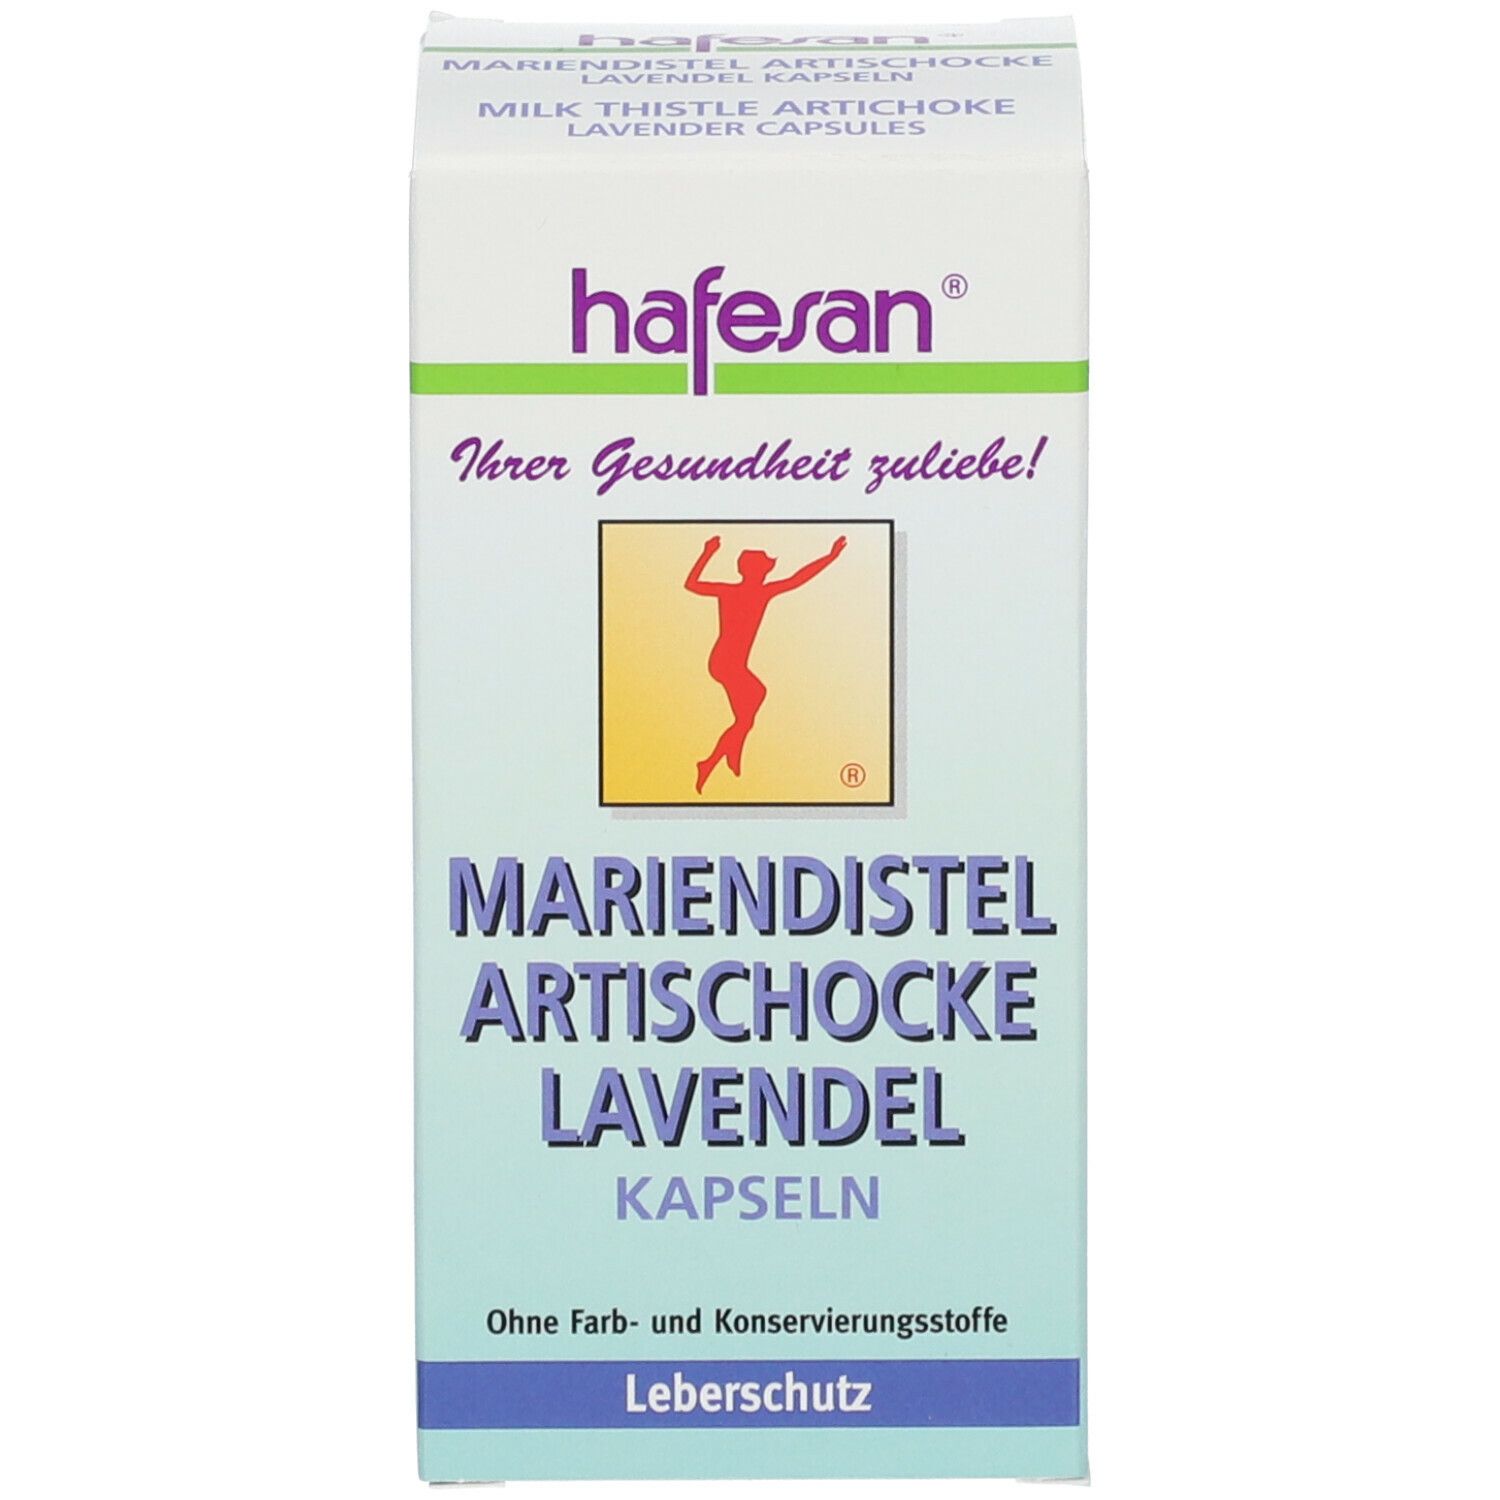 hafesan® Mariendistel Artischocke Lavendel